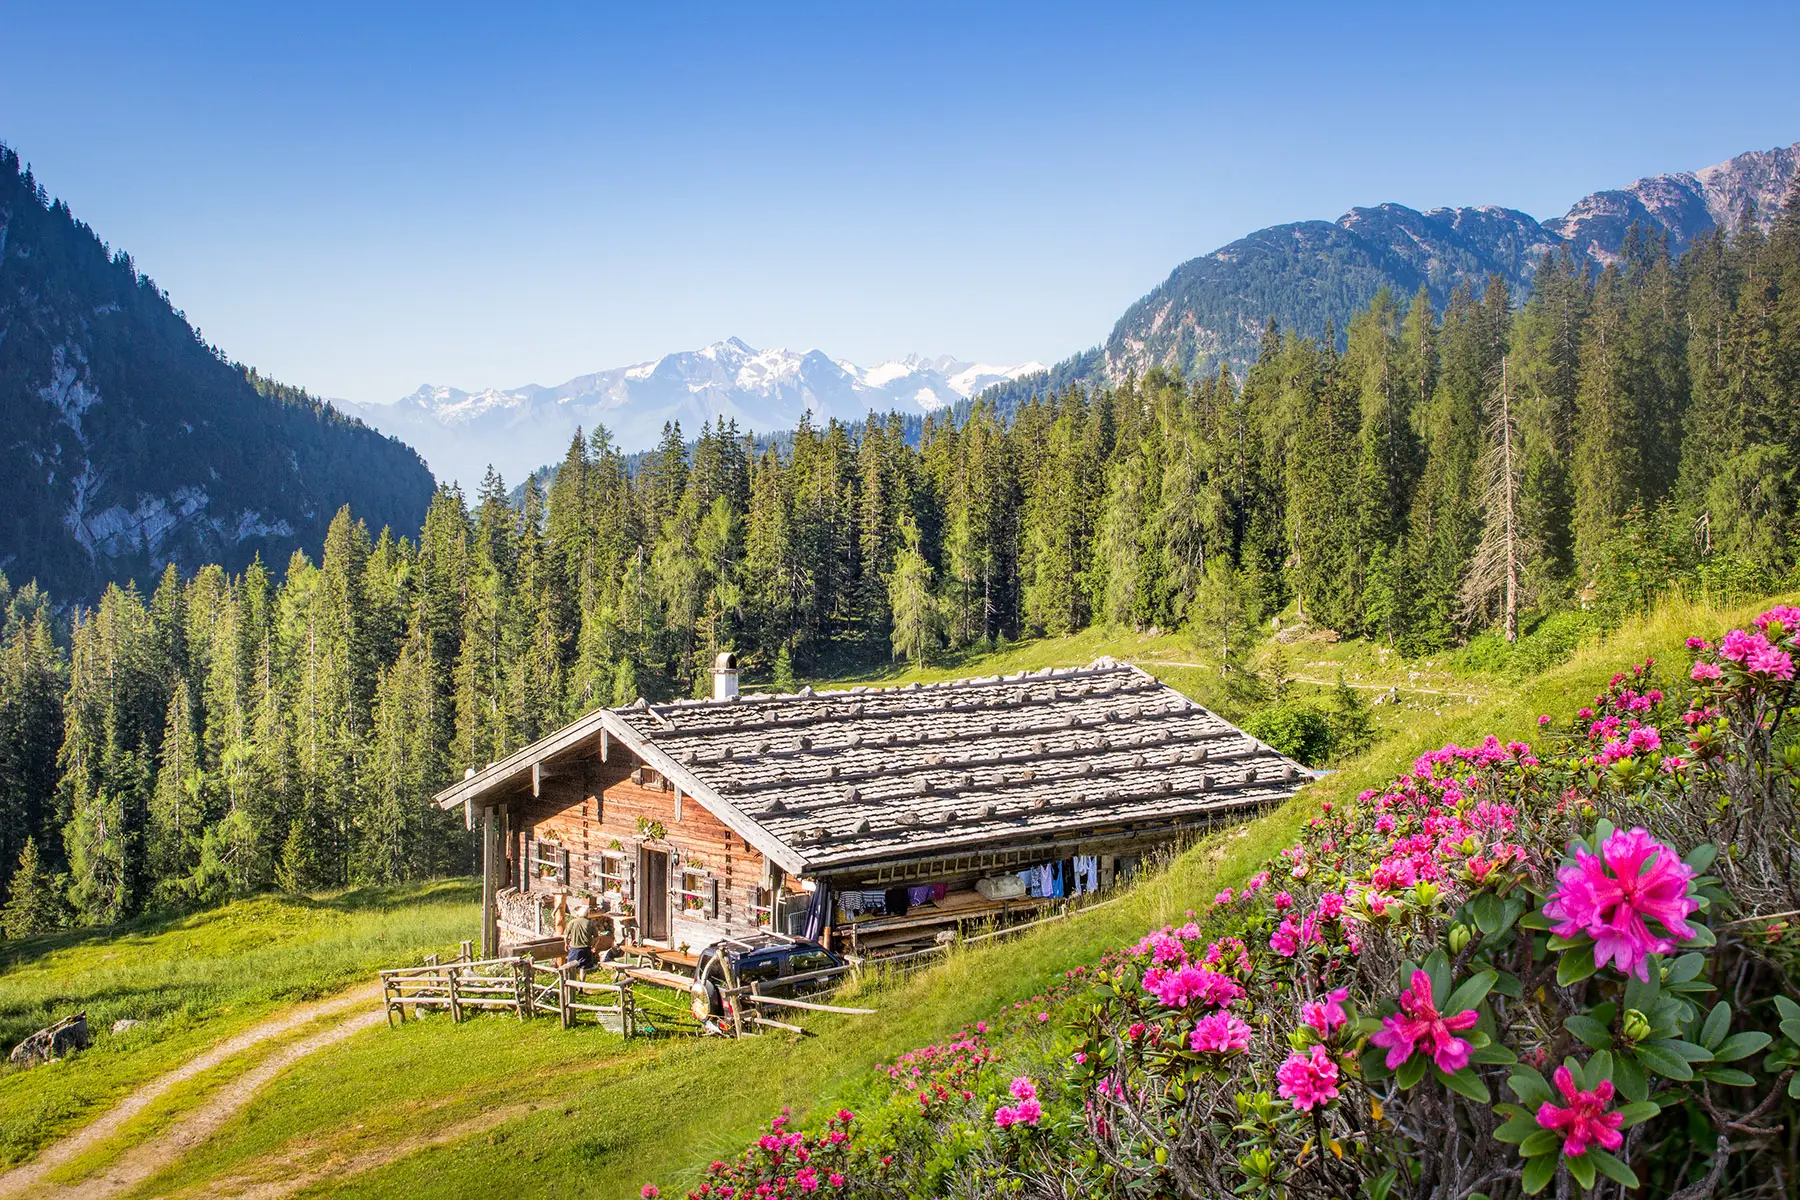 A rural alpine scene in Austria